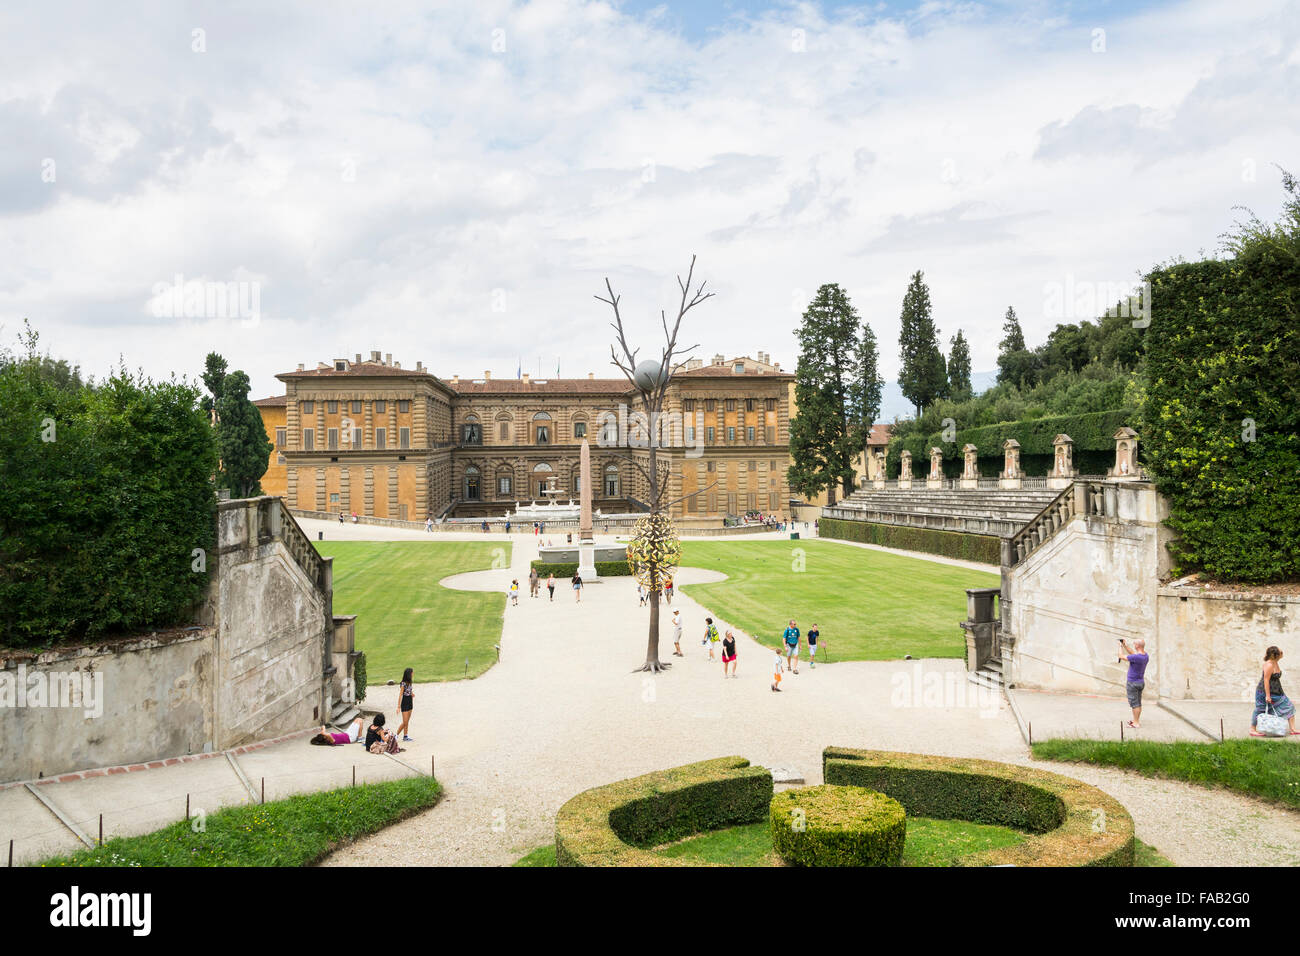 Italy-August,26,2014:Les gens se promener et prendre des photos du palais Pitti et les jardins de Boboli dans Florence-Italy pendant un sunn Banque D'Images